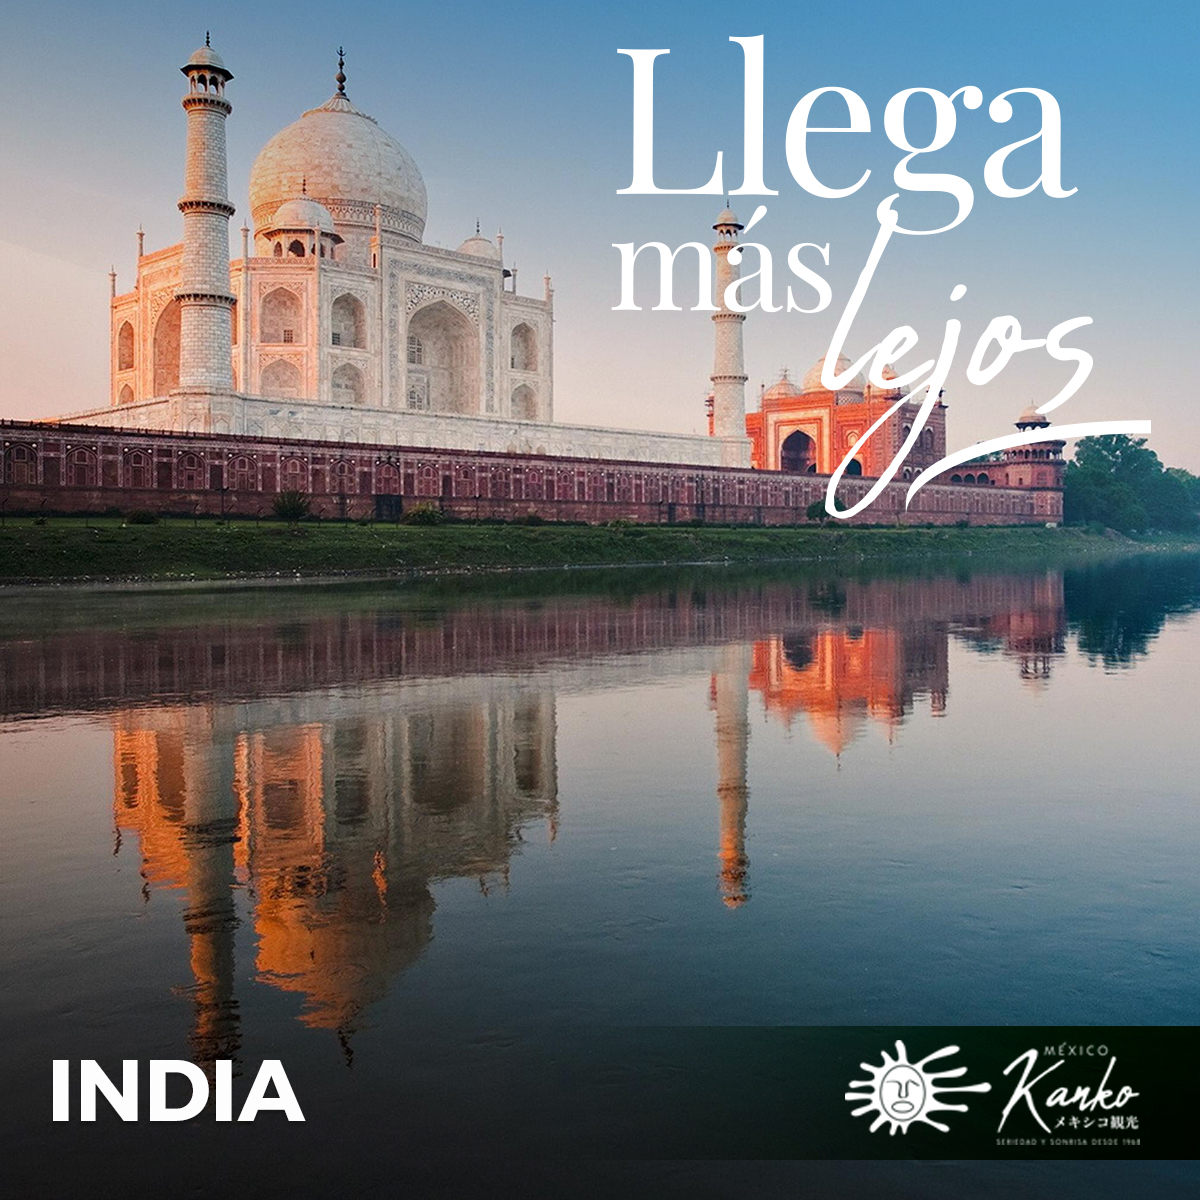 🌏 EXPERTOS en ASIA📍INDIA 🇮🇳
😍 La belleza de la #India es tan vasta que encanta con sus impresionantes paisajes naturales y sus monumentos históricos como el Taj Mahal en Agra o los templos antiguos en Khajuraho. 
🧡 La India cautiva con su riqueza cultural y arquitectónica…👇🏻